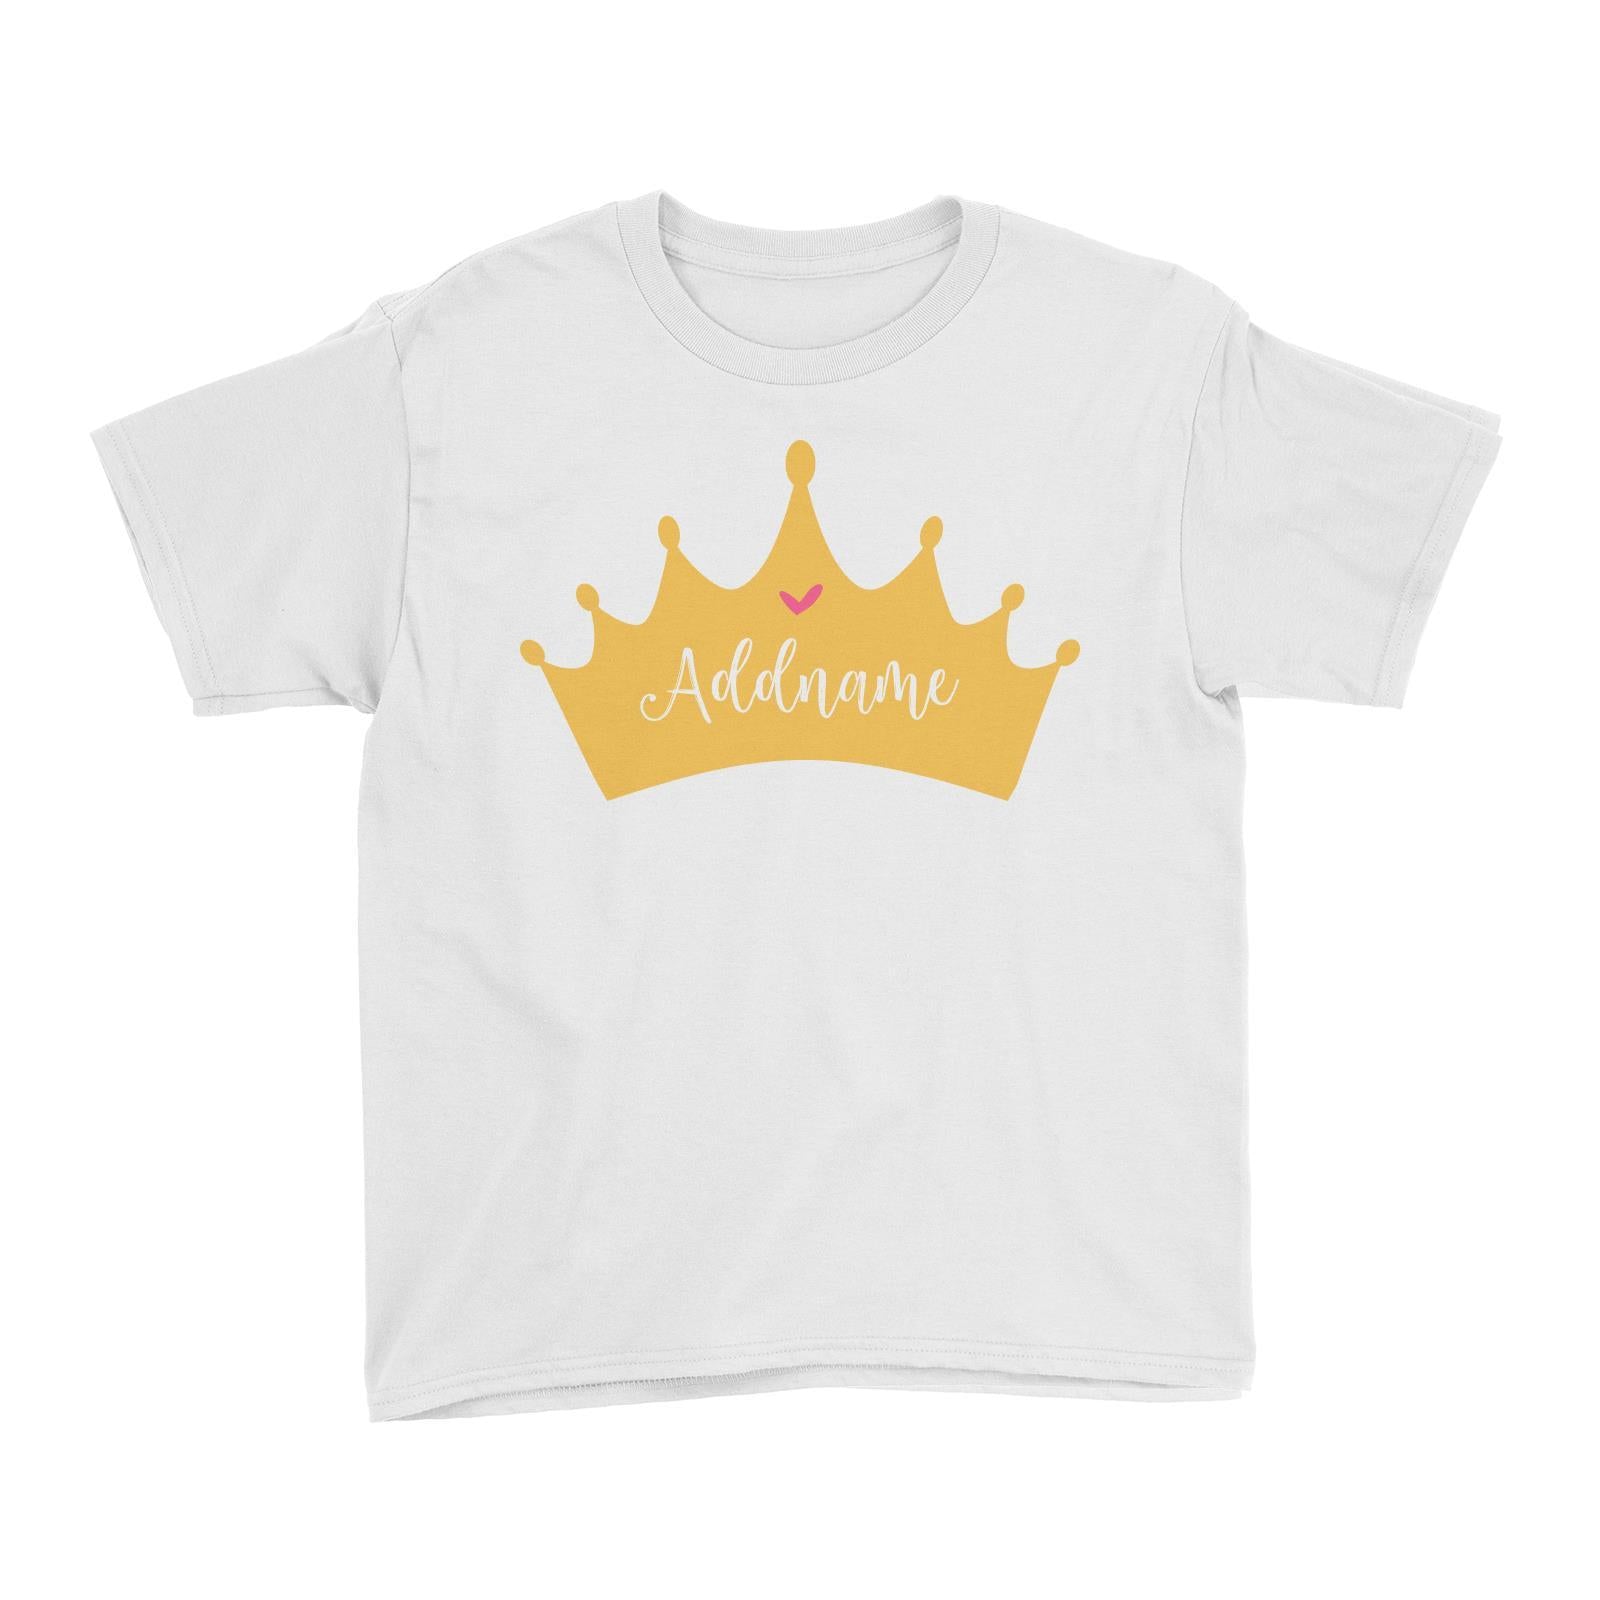 Princess Addname in Tiara Kid's T-Shirt